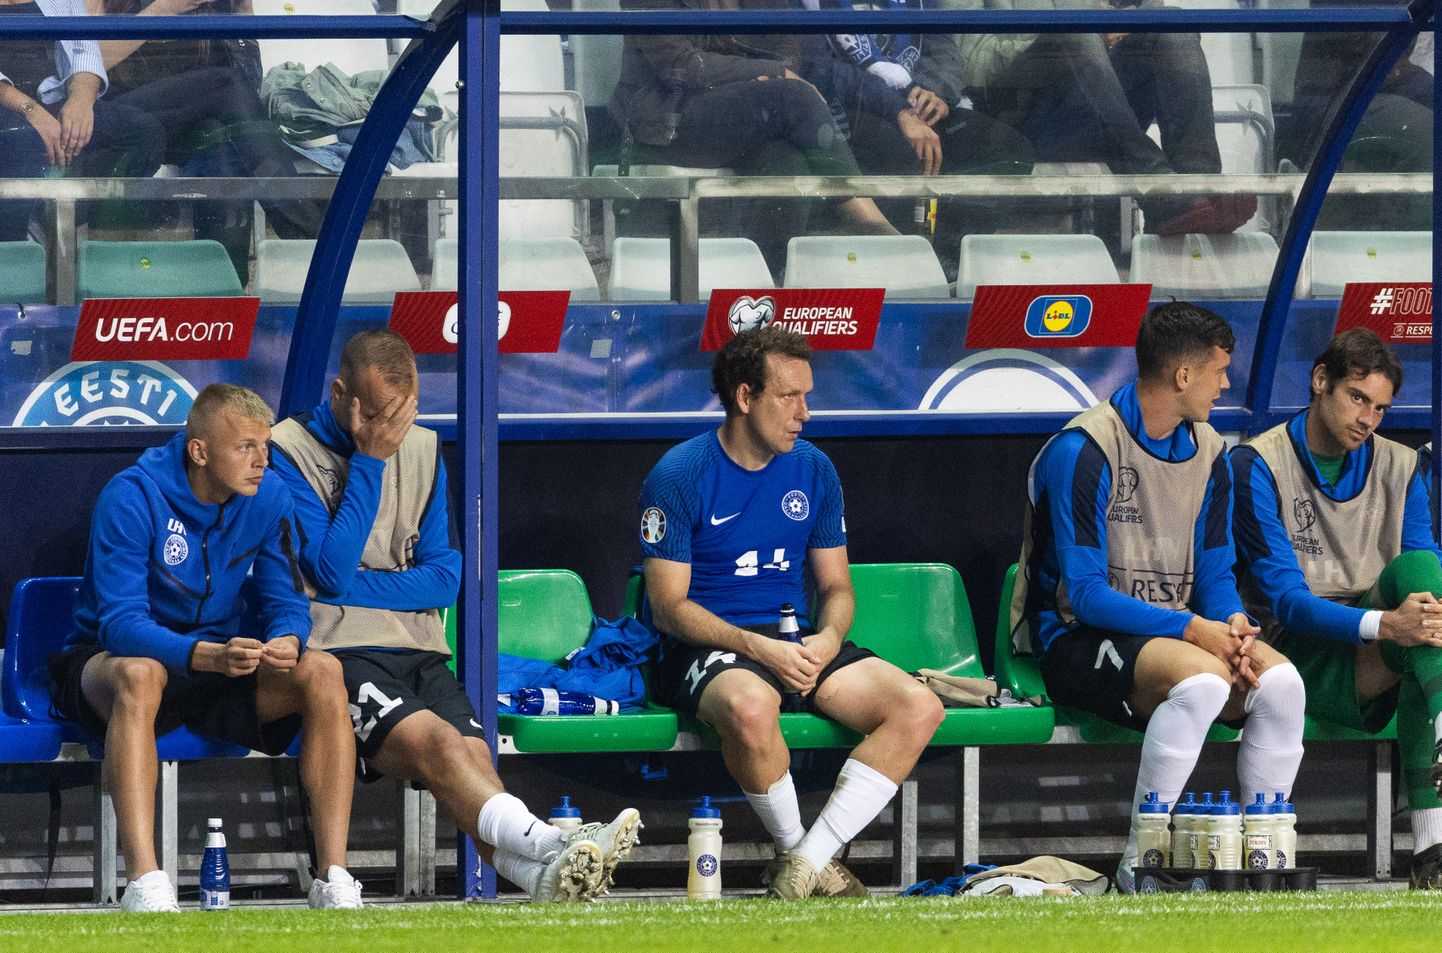 Итог сборной Эстонии по результатам последних трех матчей 0:13.